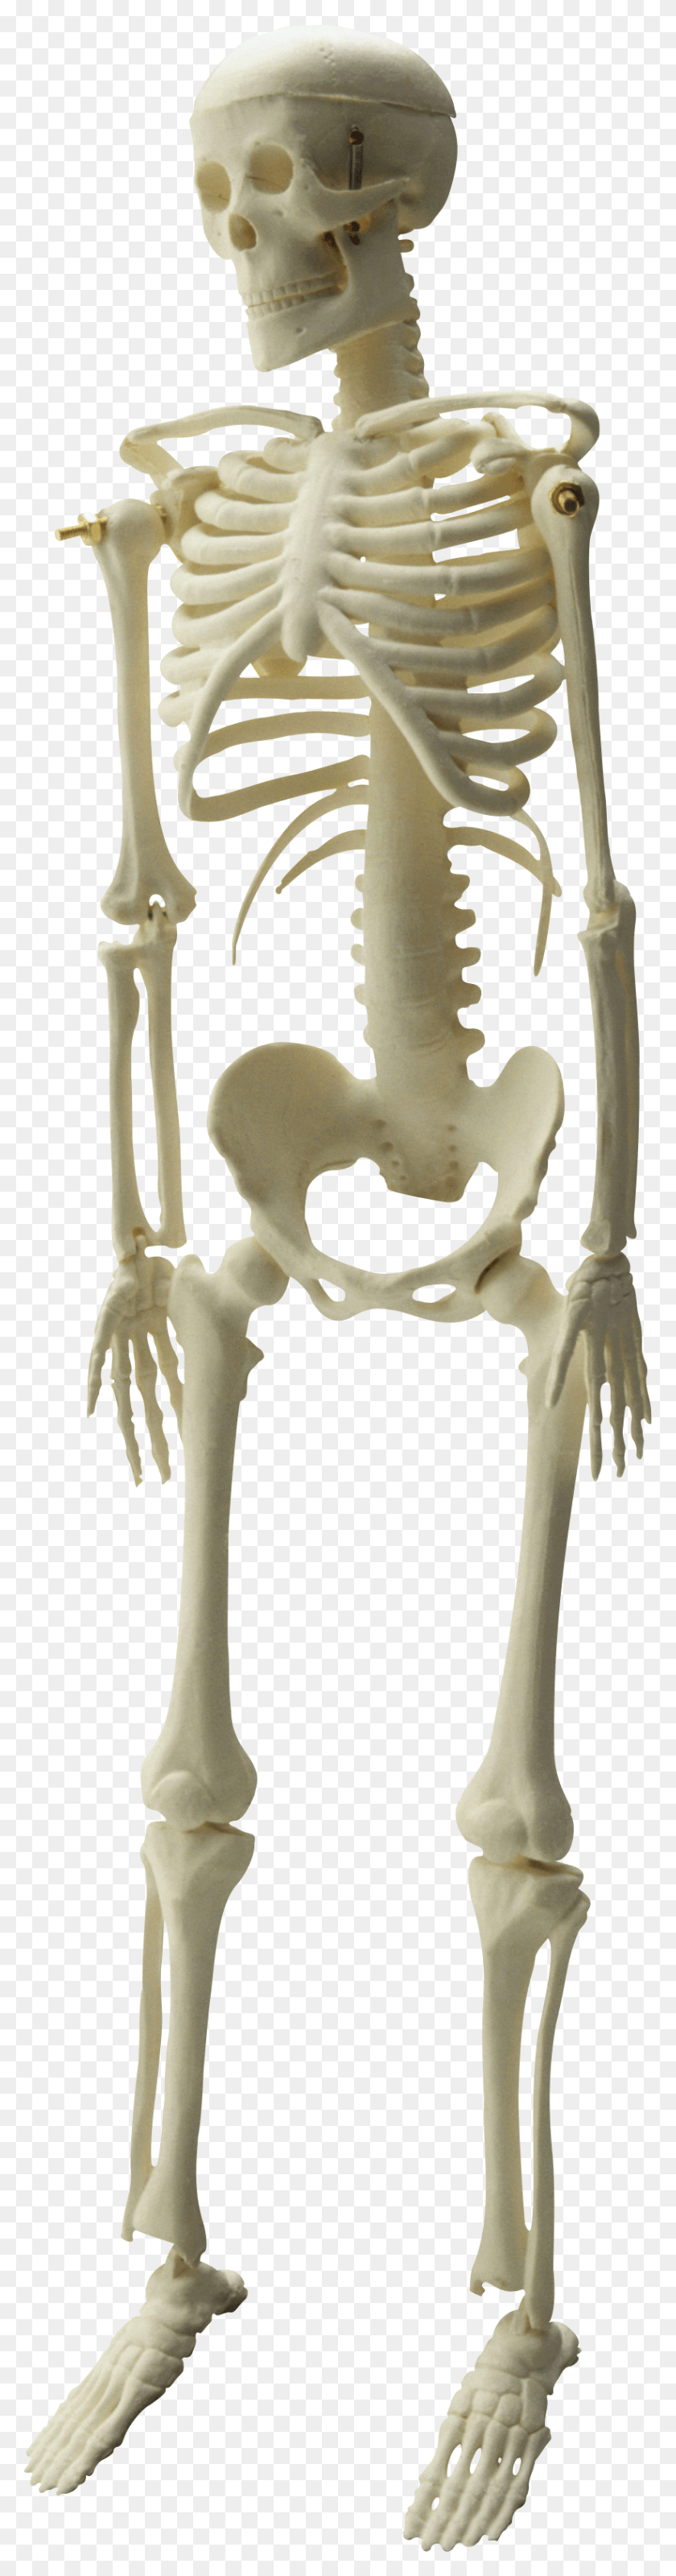 821x3305 Free Skeleton Skull Images Background Kankal, Helmet, Clothing, Apparel HD PNG Download